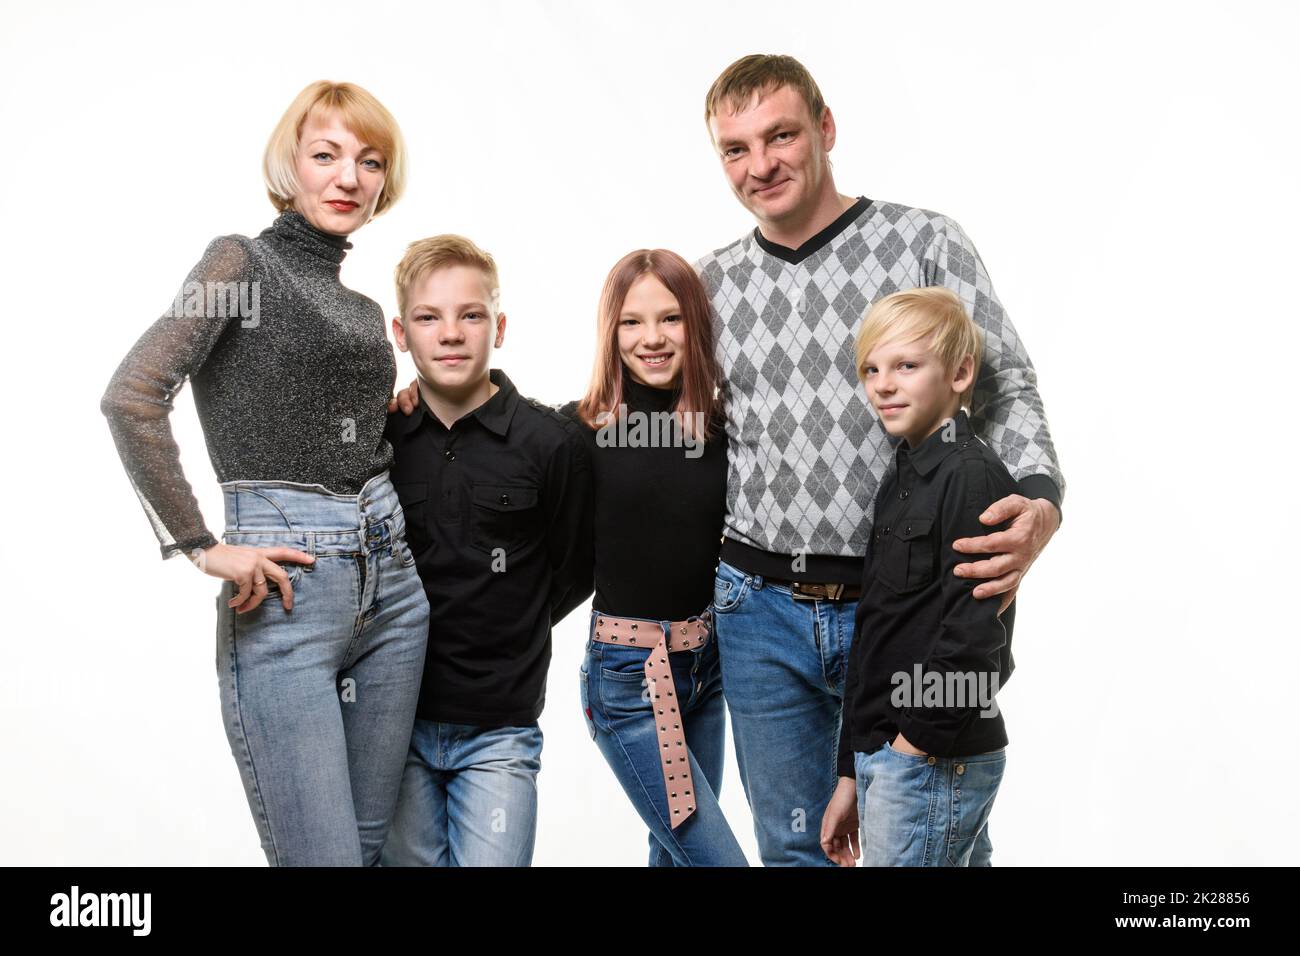 Grande famiglia russa per adulti in abiti casual, isolato su sfondo bianco Foto Stock